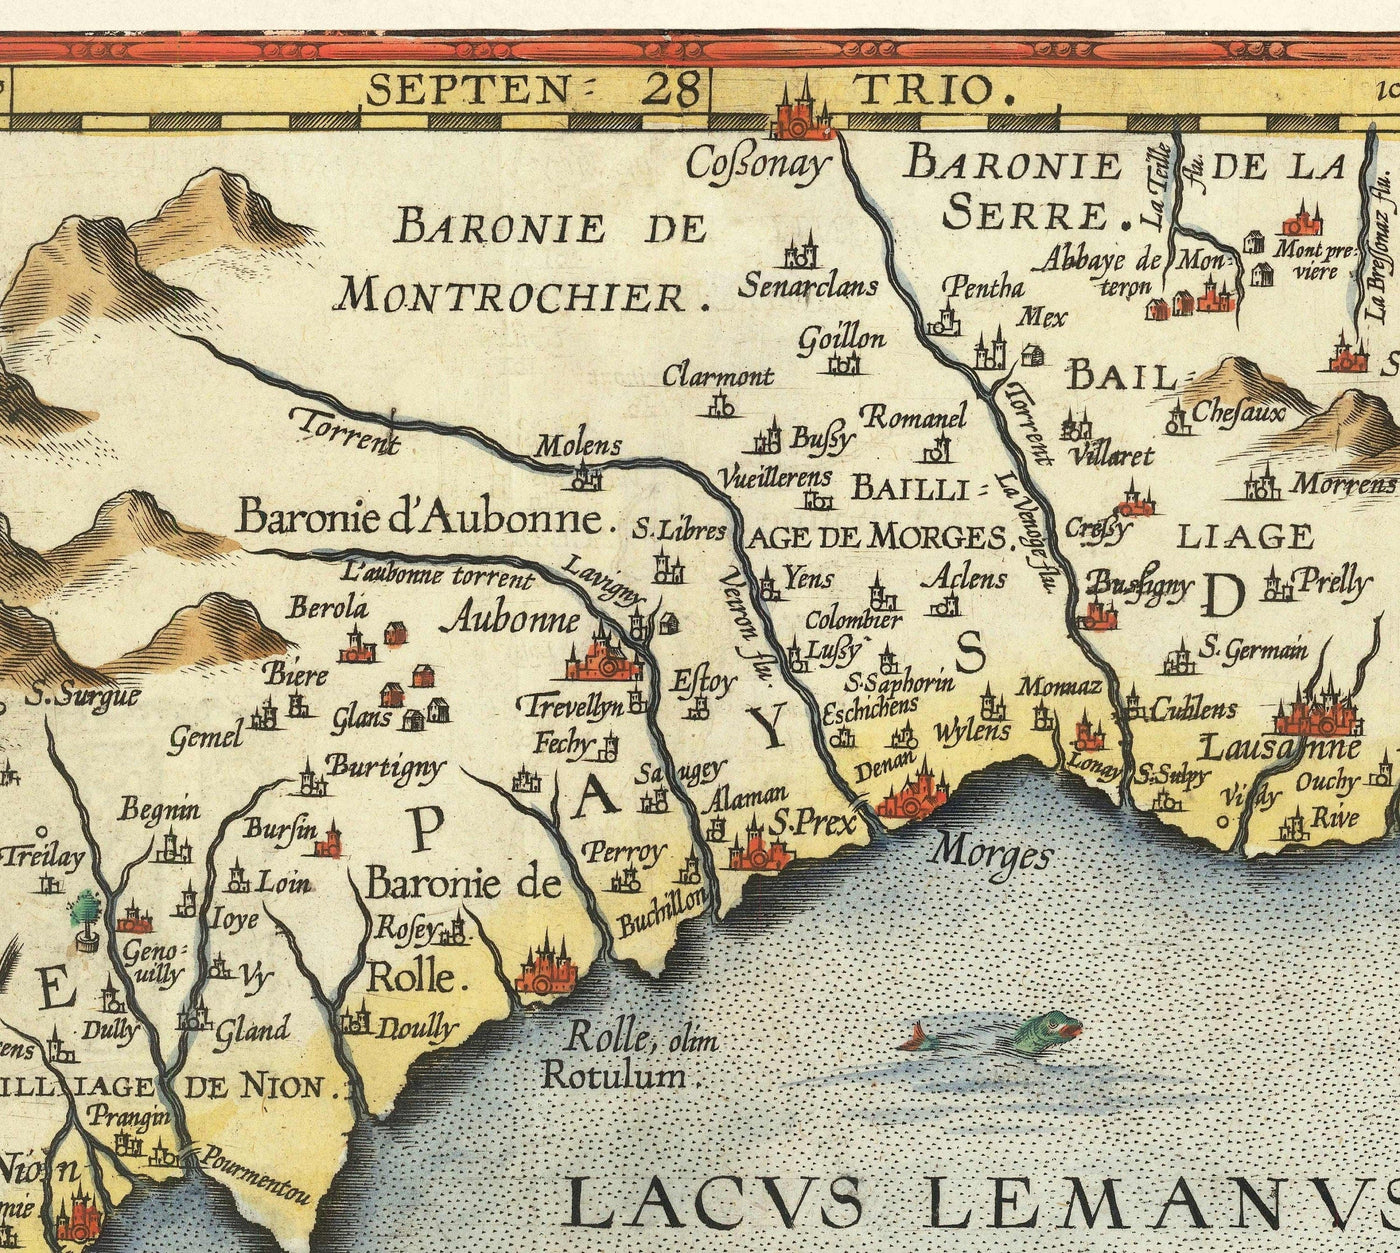 Ancienne carte du lac Léman par Abraham Ortelius, 1573 - Lausanne, Montreux, Thonon-les-Bains, Evian, Nyon, Morges